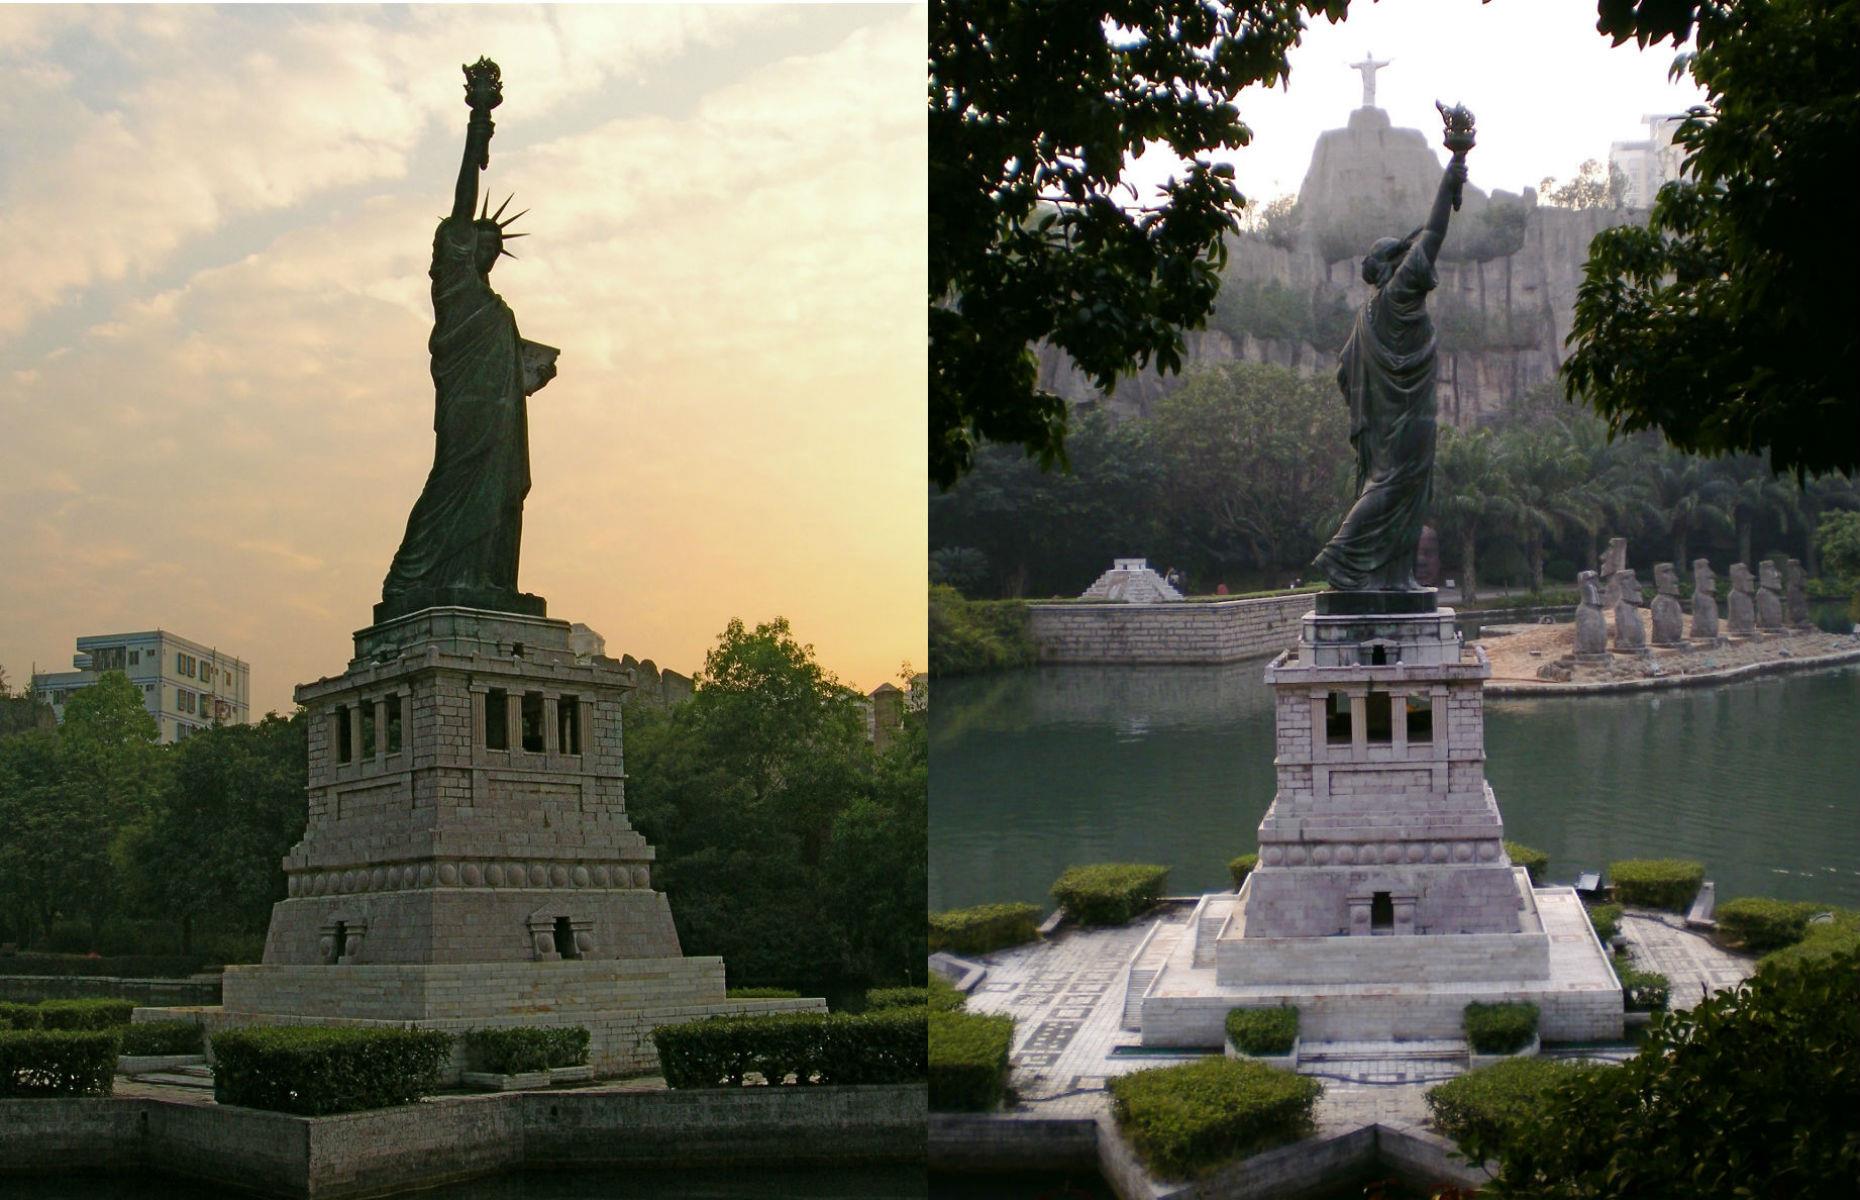 The Statue of Liberty, Shenzhen, China